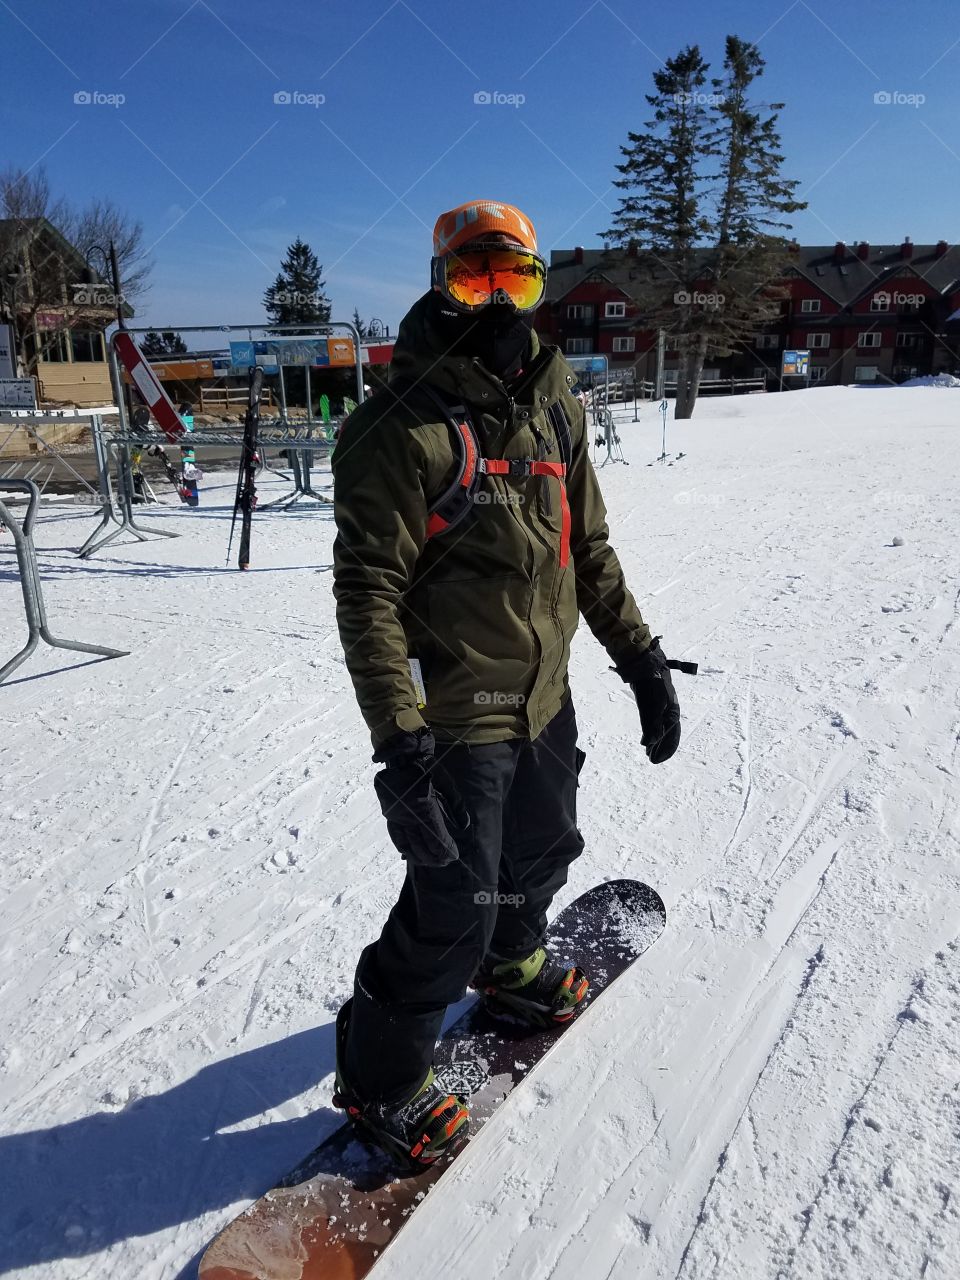 Below freezing snowboarding